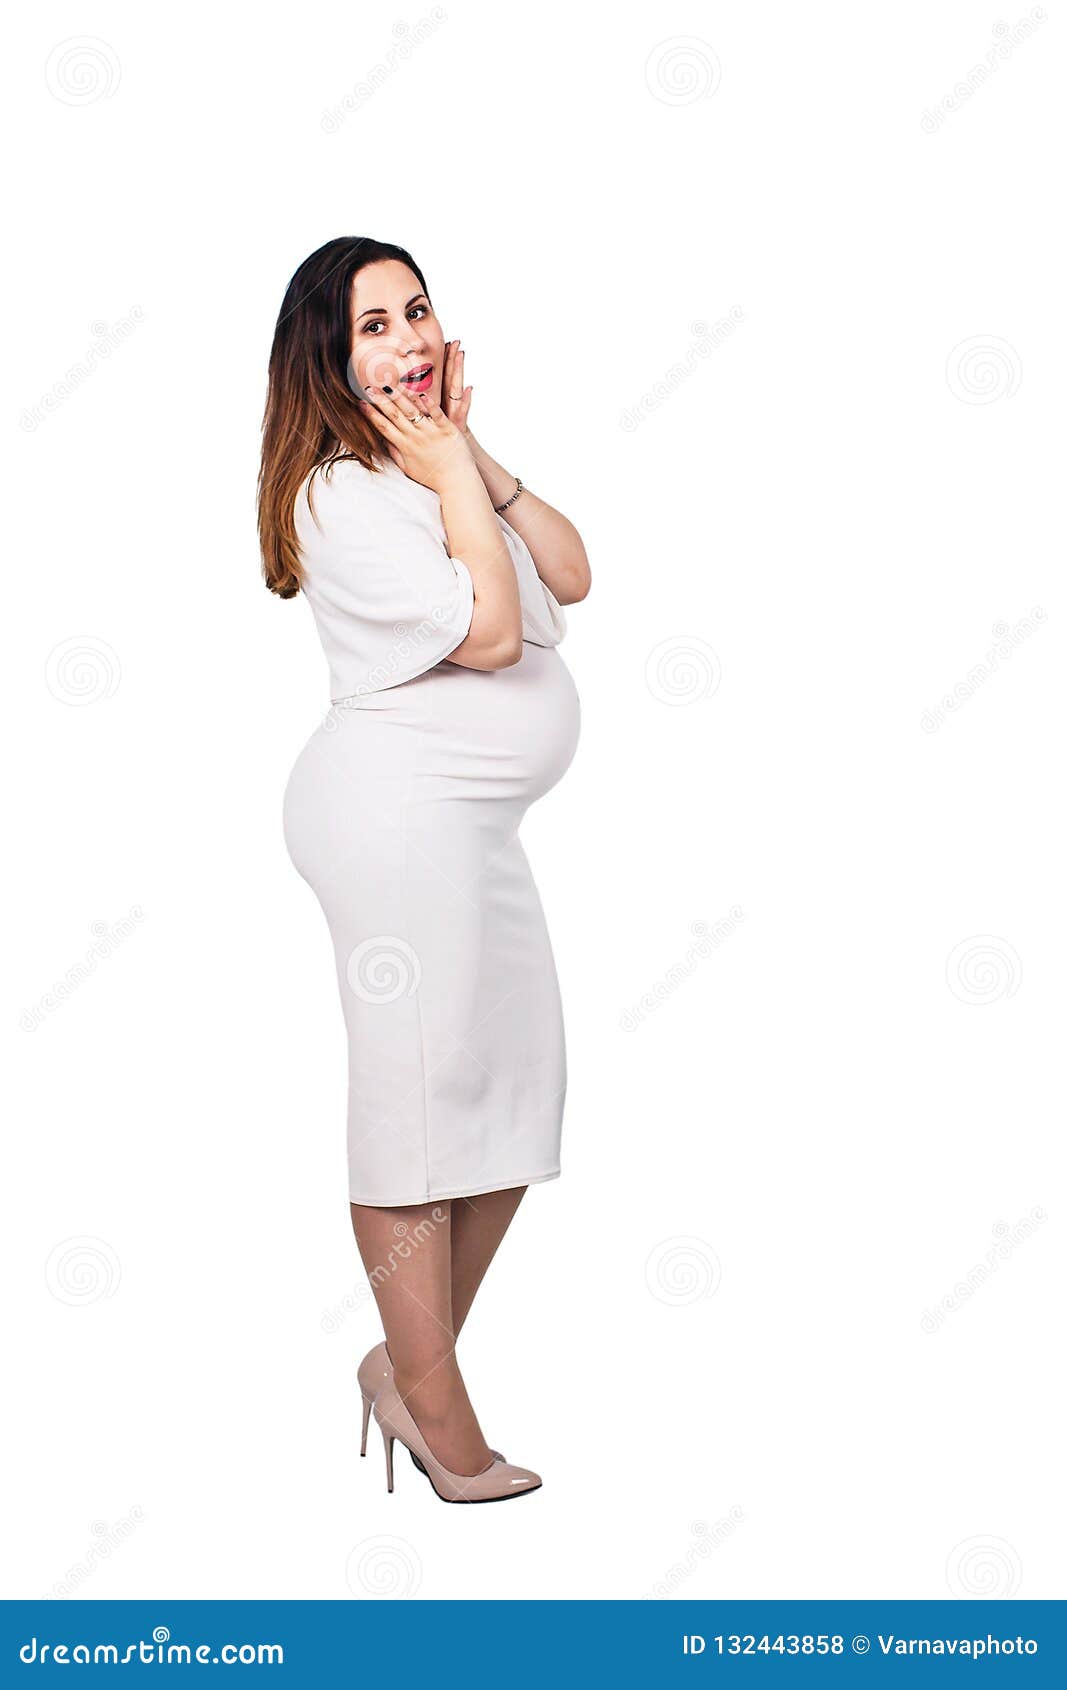 Embarazada Sorprendida En Un Vestido Blanco La Empresaria Embarazada Aislada En Blanco Foto de archivo - Imagen de adulto, vientre: 132443858